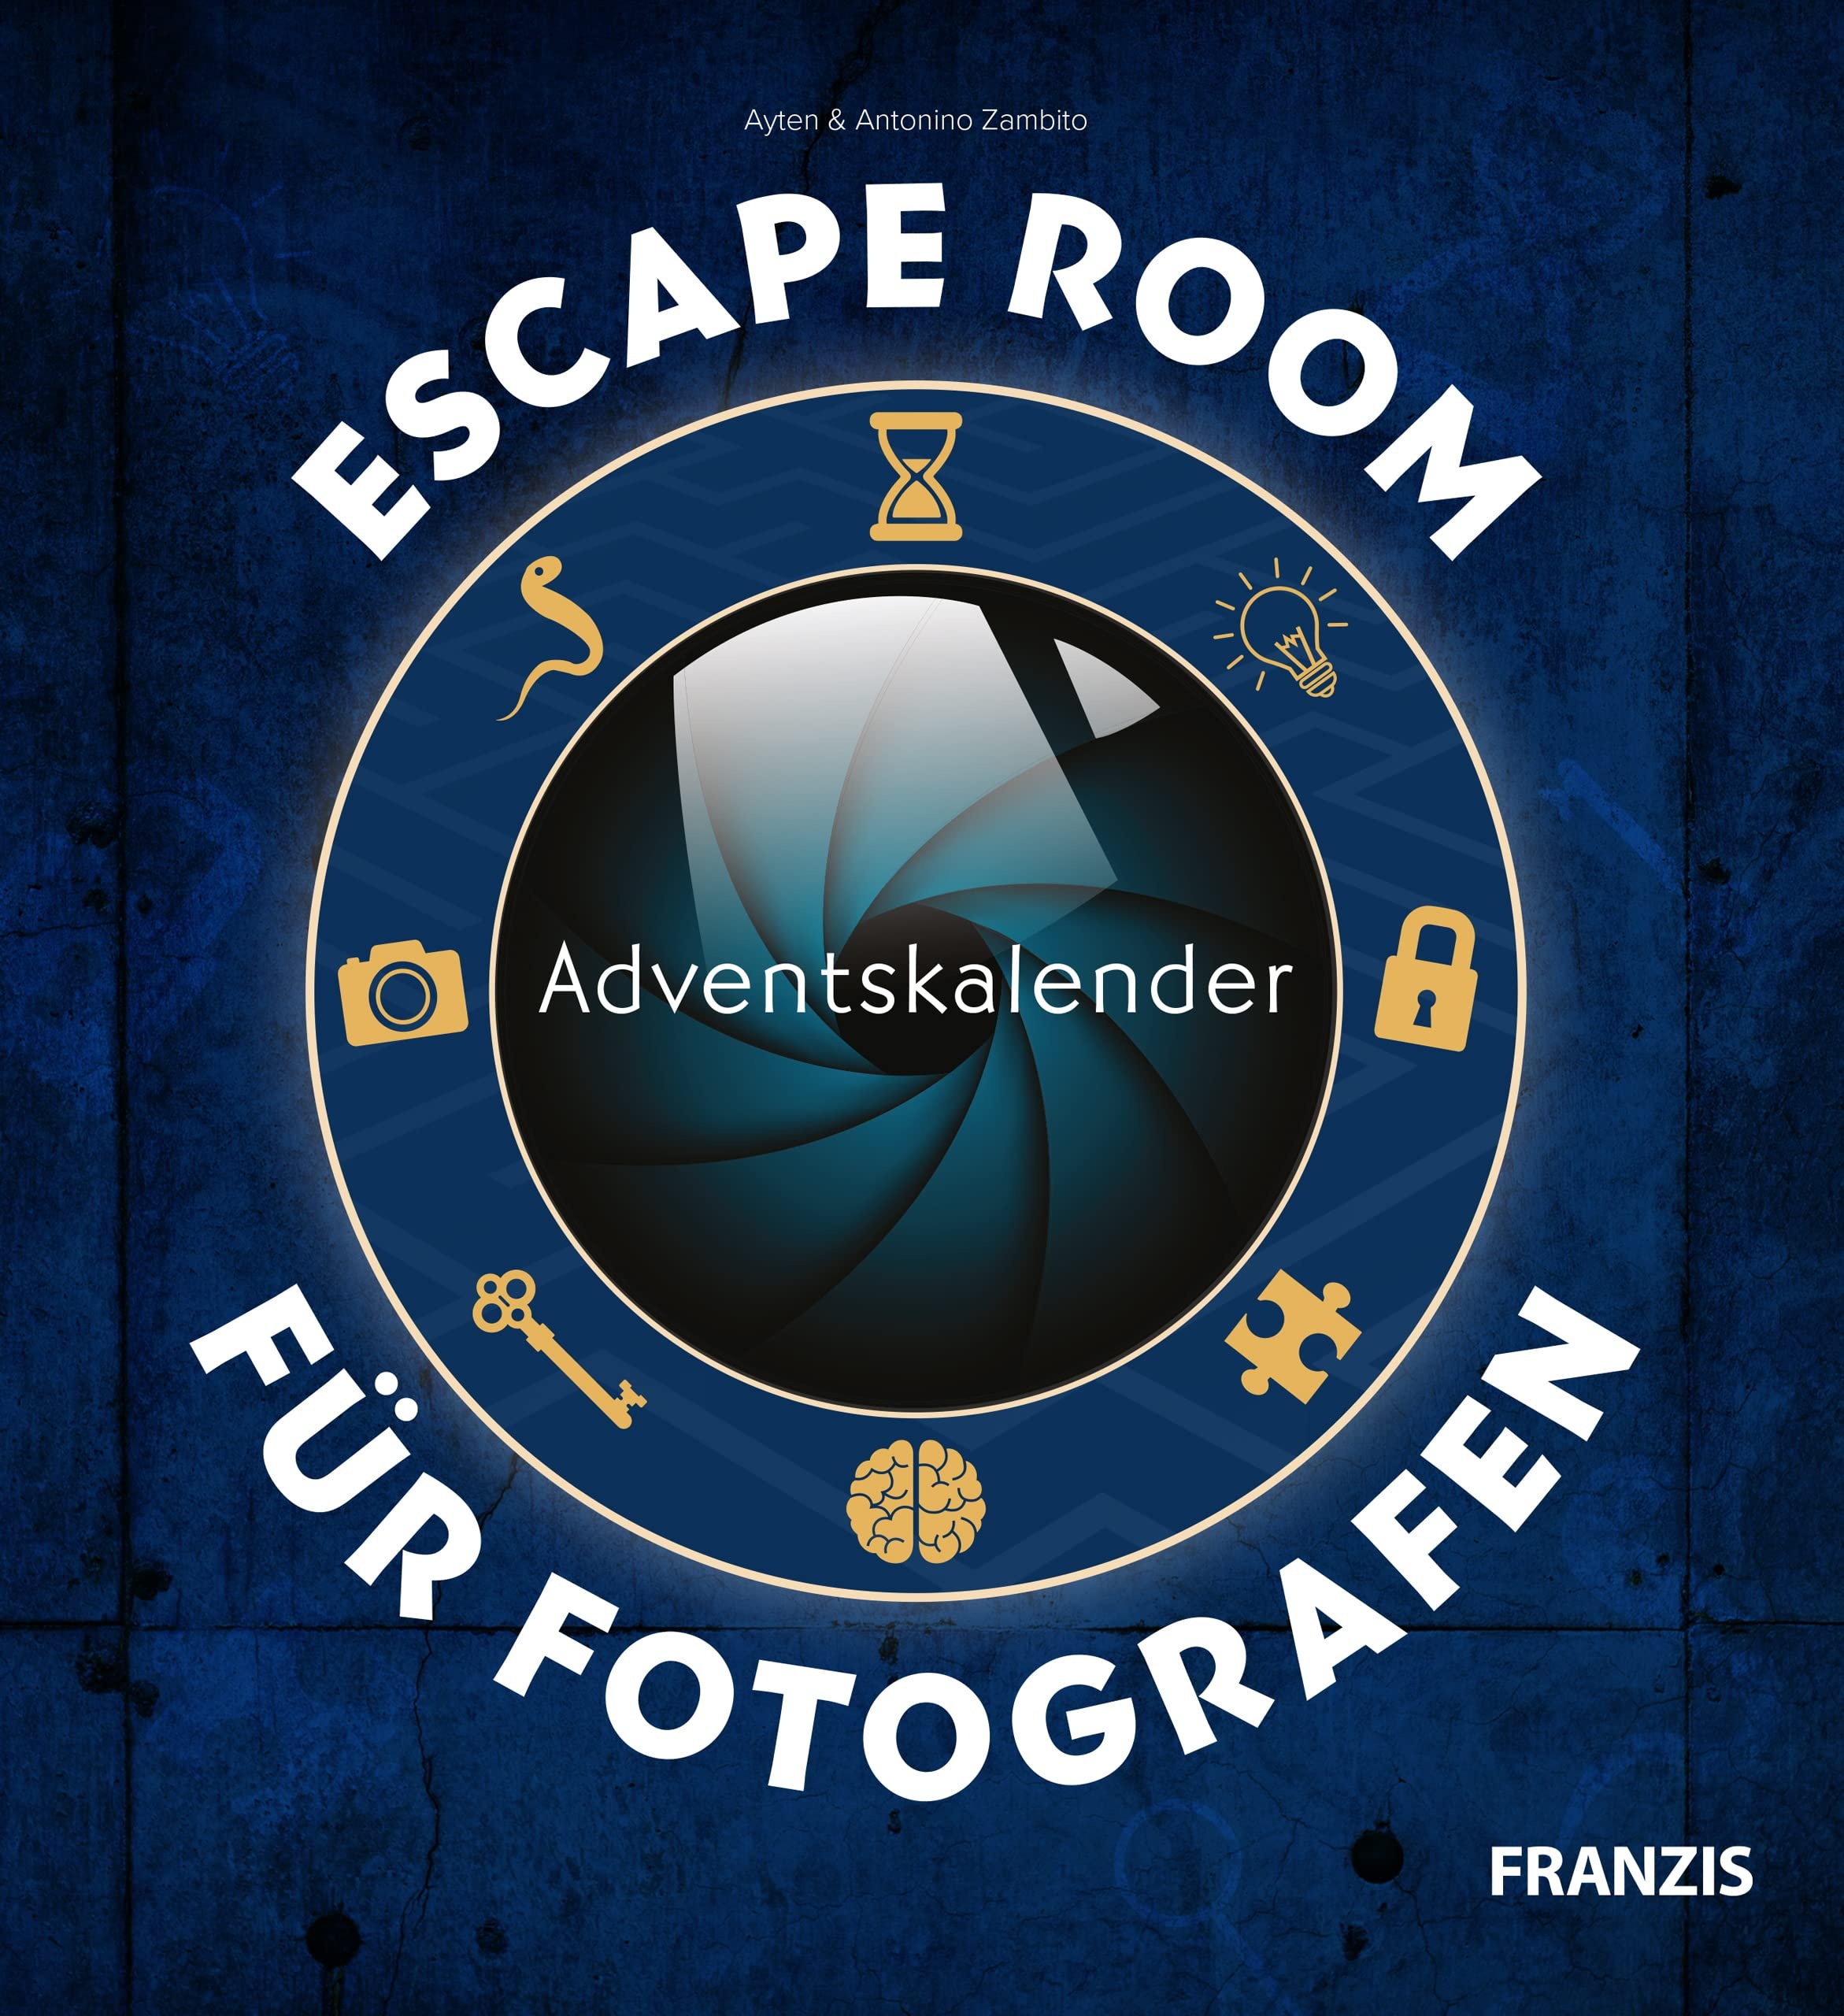 FRANZIS 60699 - Escape Room Adventskalender für Fotografen, 24 Rätsel für mehr fotografisches Know-how, für Anfänger und Profis